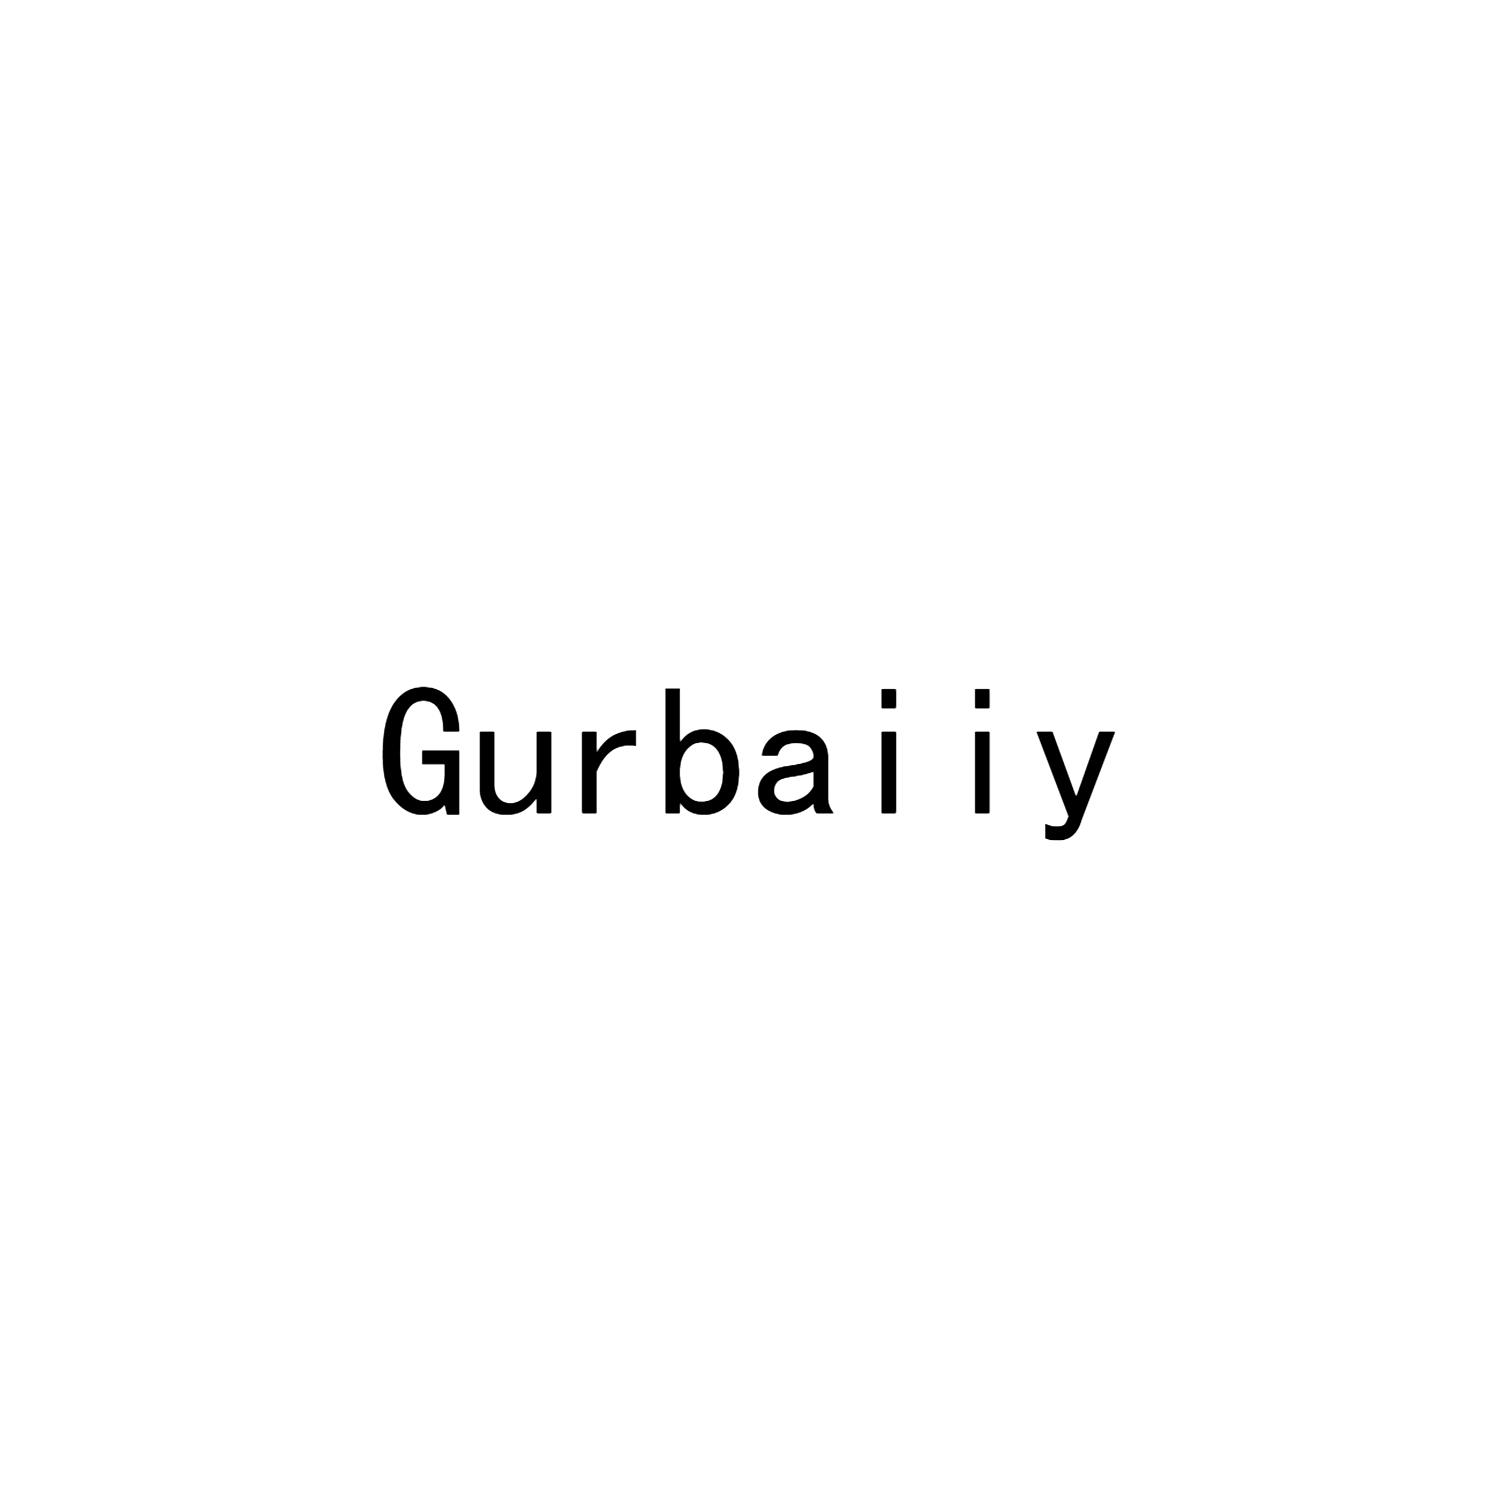 Gurbaiiy